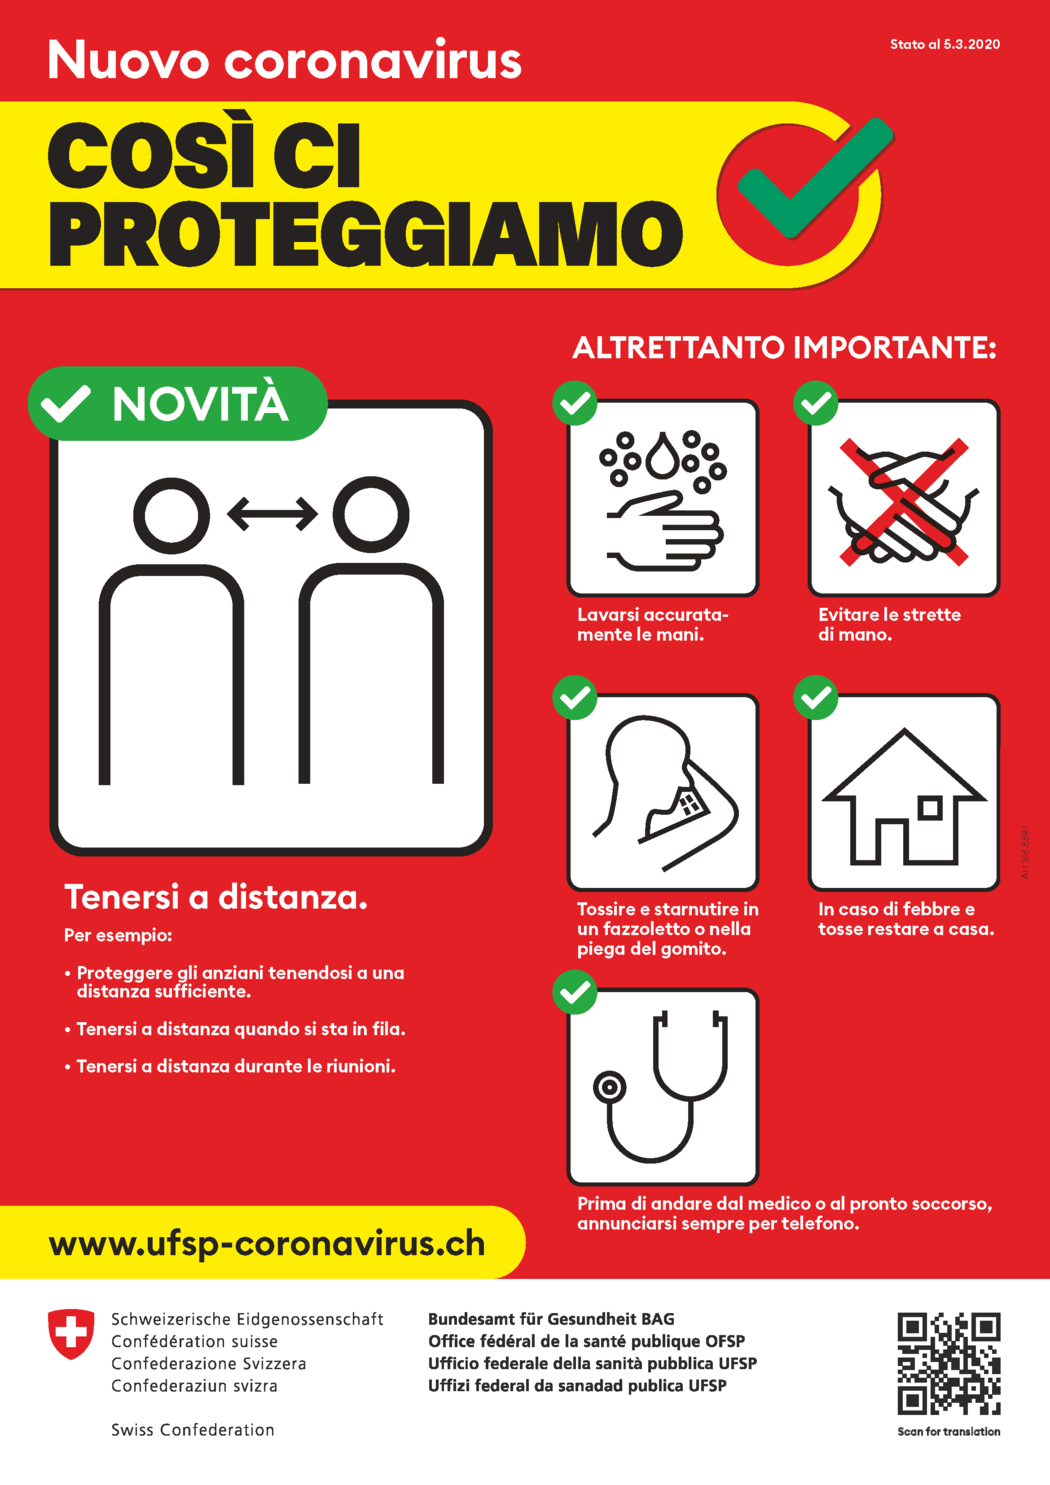 cartellone_nuovo_coronavirus_cosi_ci_proteggiamo.png